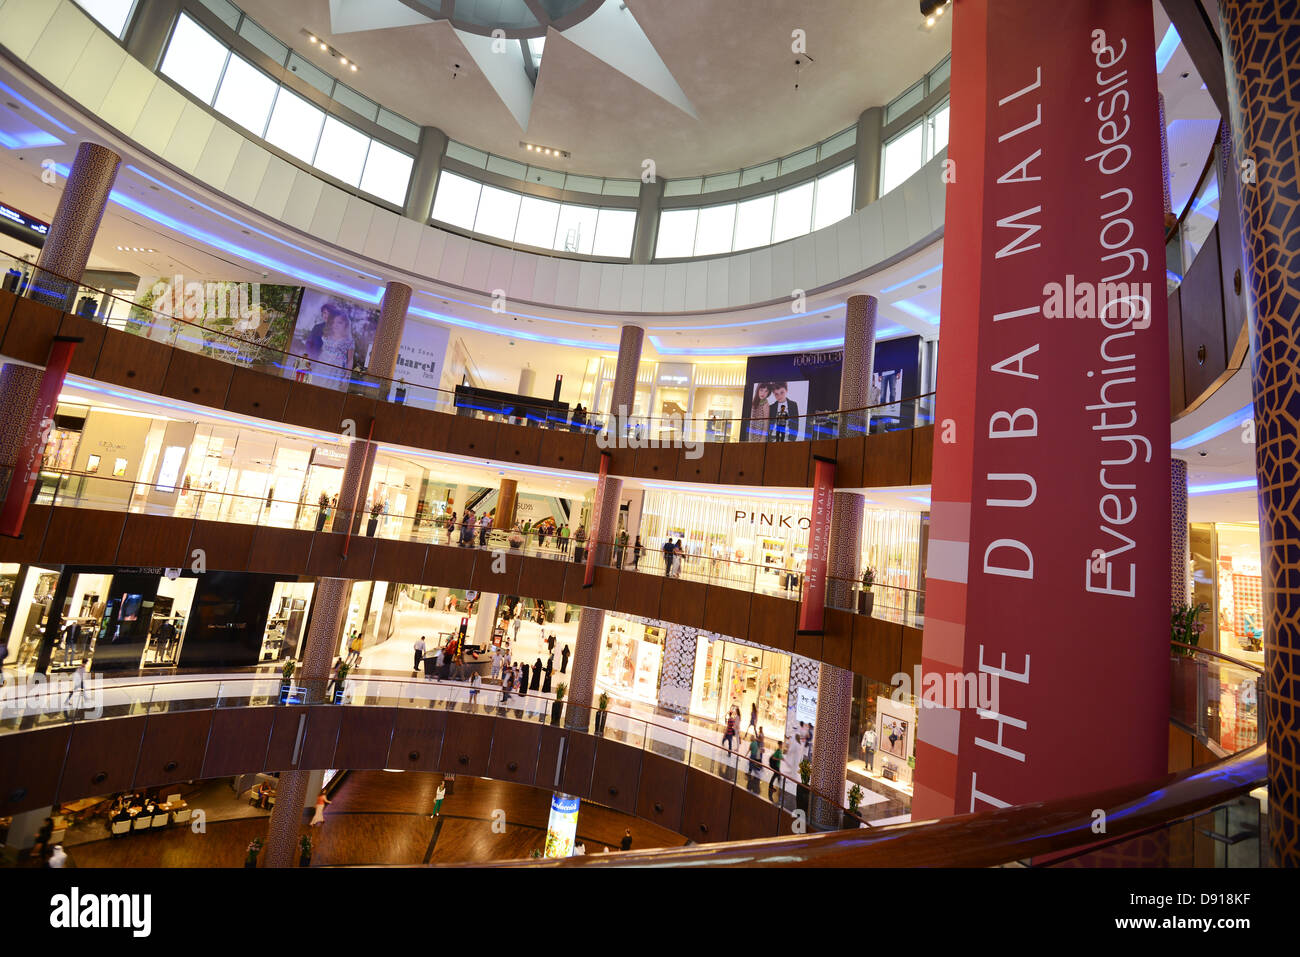 Dubai Mall, The Dubai Mall interior, Dubai, United Arab Emirates Stock Photo